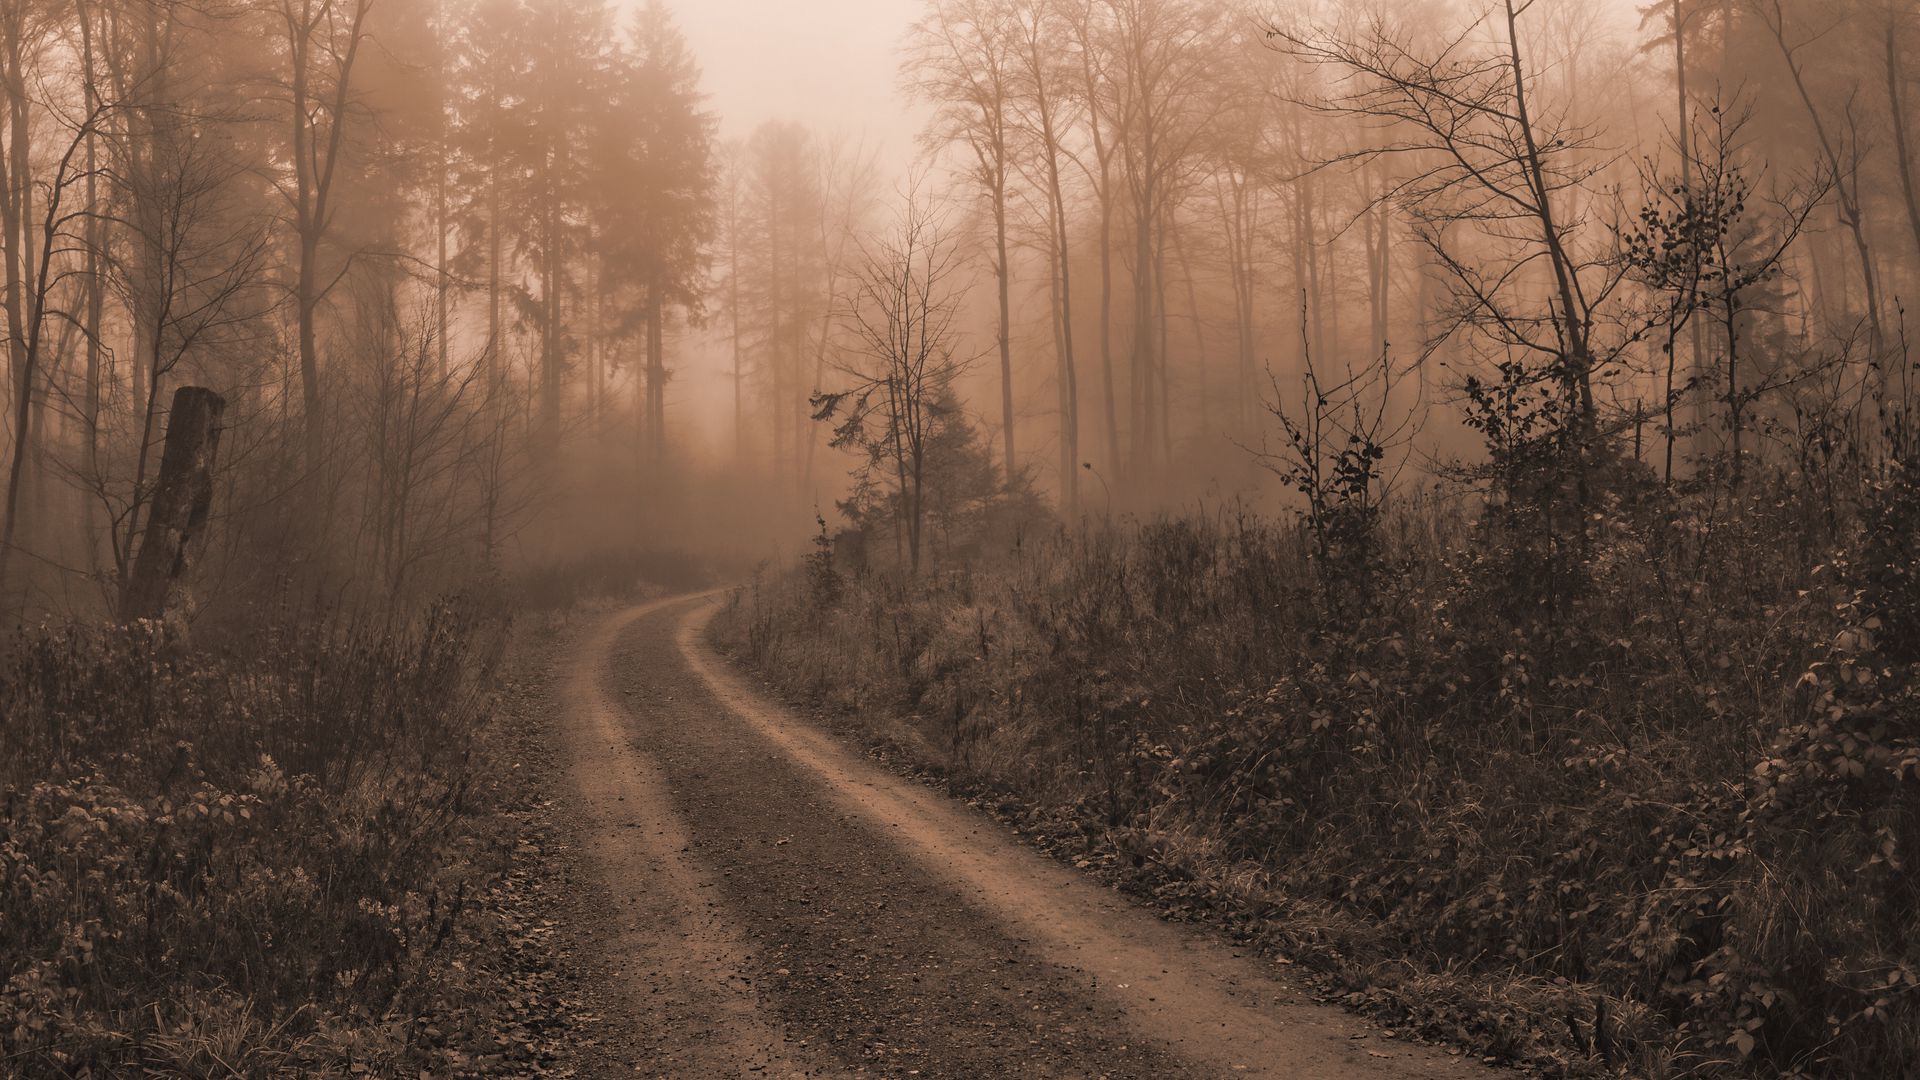 Phong cảnh con đường dẫn vào thung lũng sương mù 41